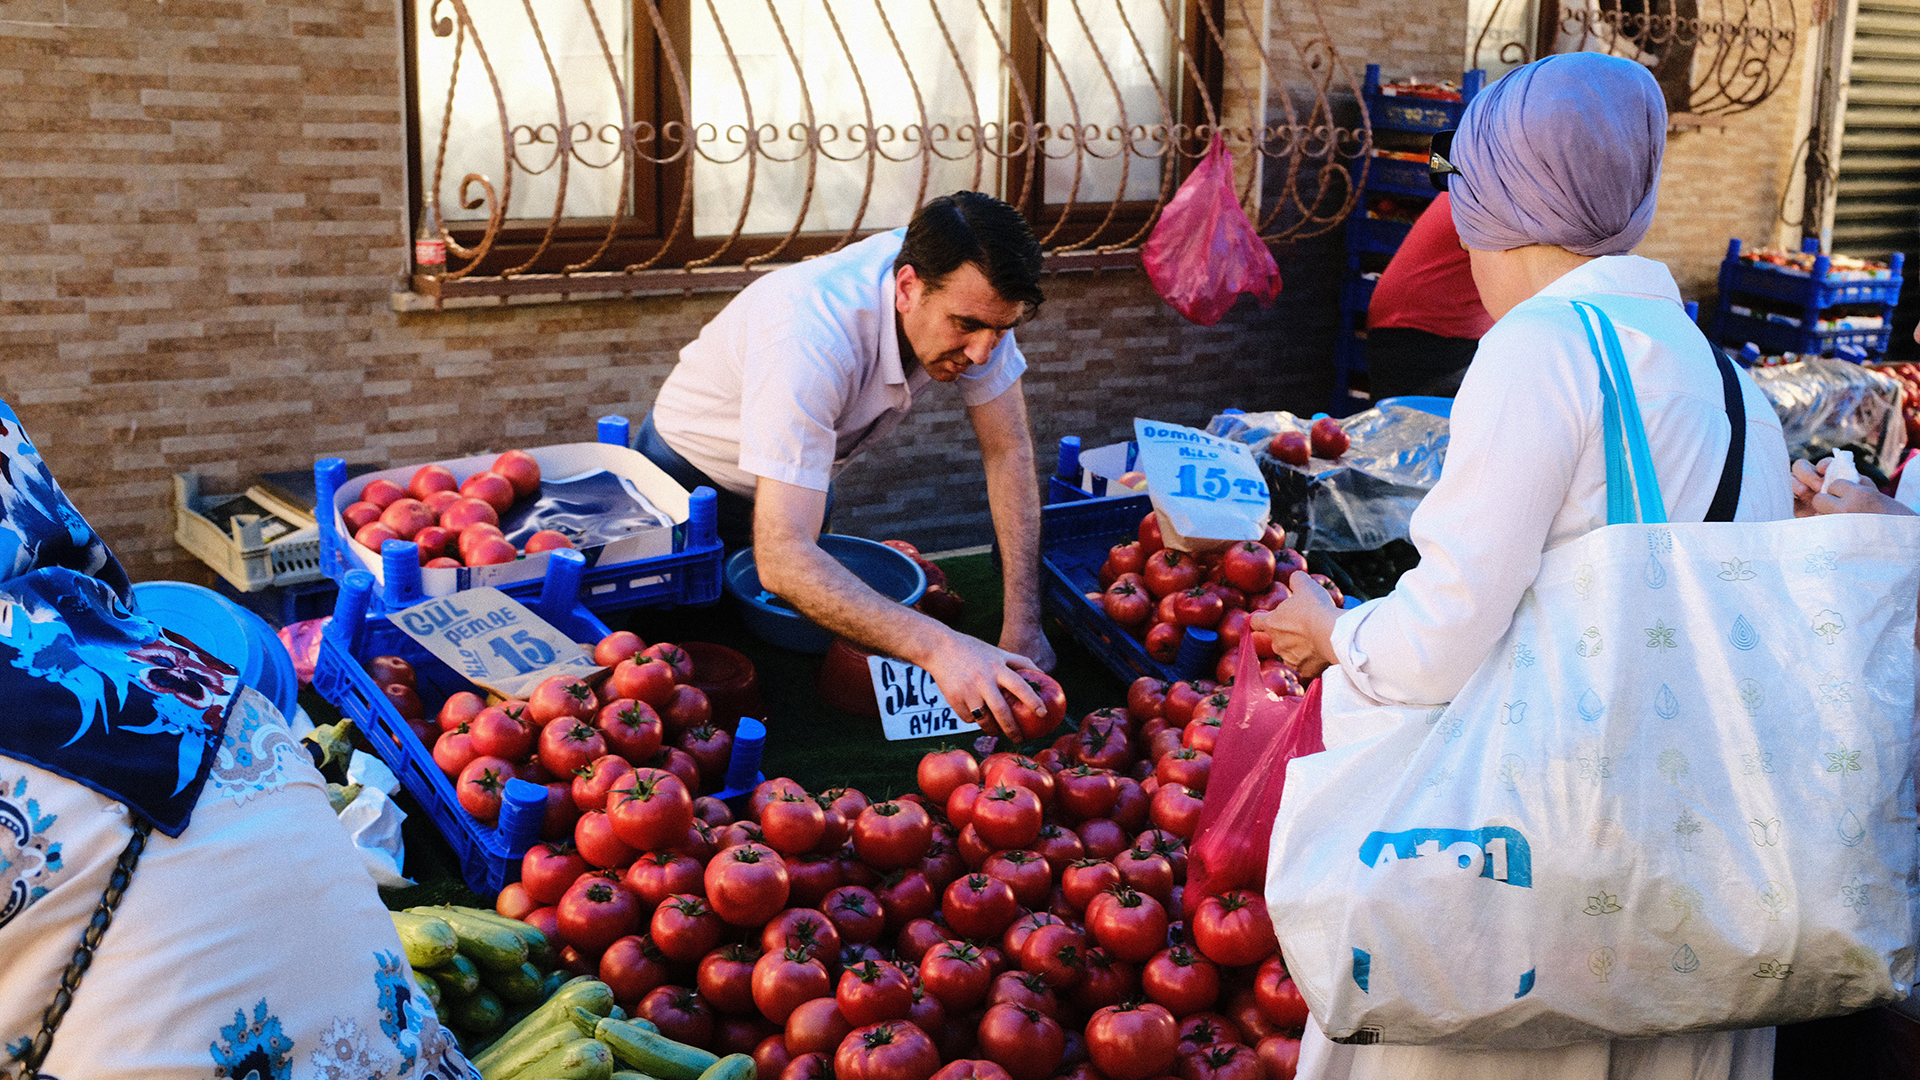 Ein Mann verkauft auf einem Markt Tomaten - eine Kundin steht an seinem Stand | picture alliance / NurPhoto